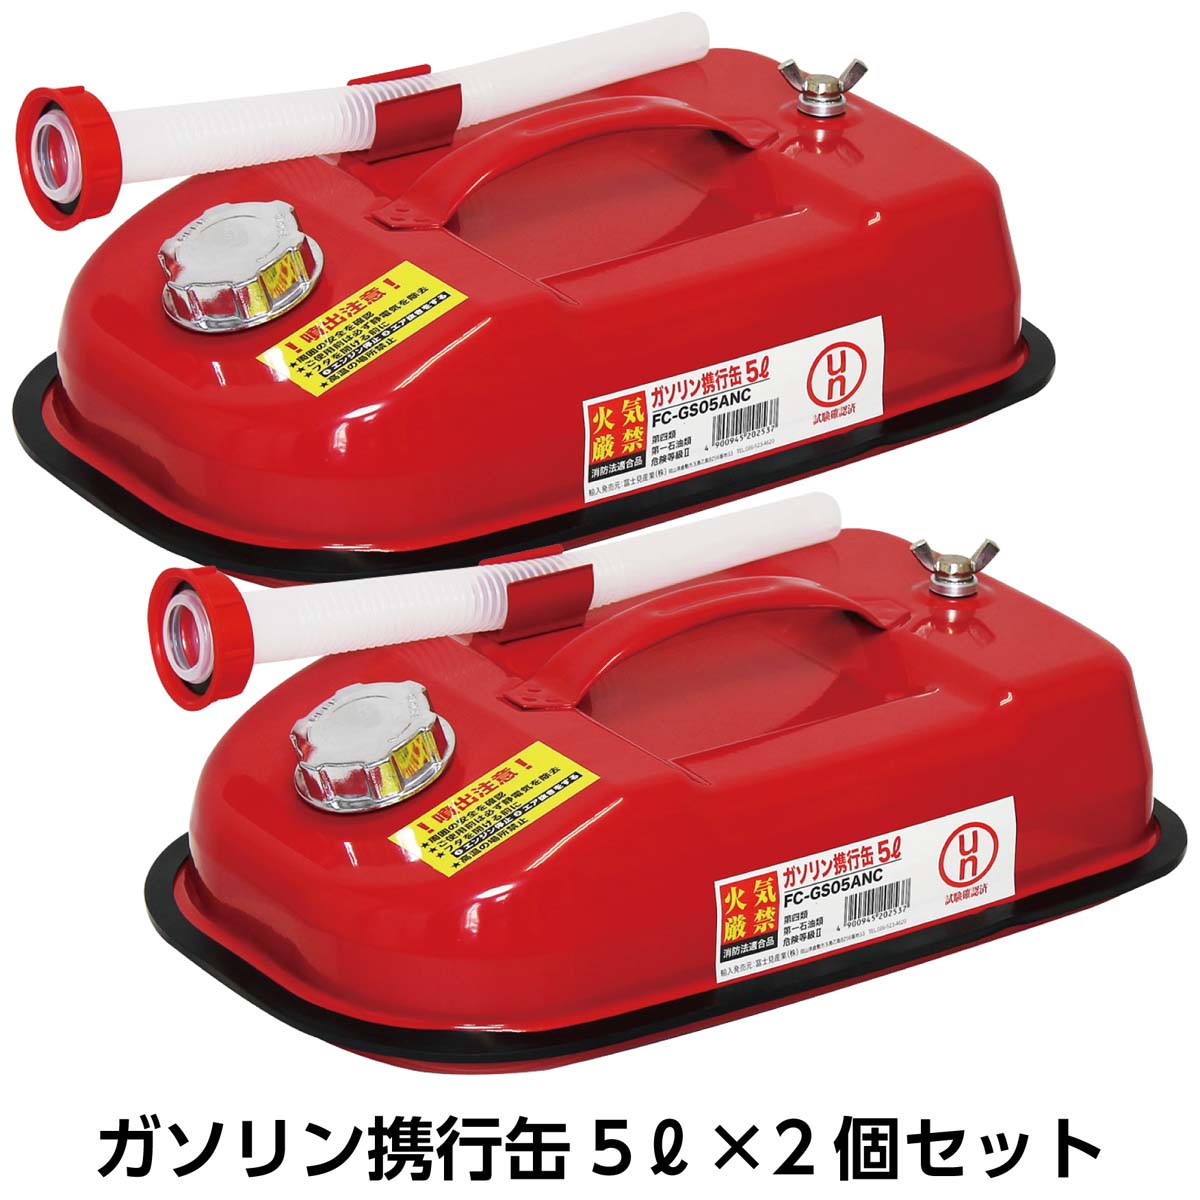 人気 ガレージ ゼロ ガソリン携行缶 横型 赤 5L GZKK01 ×8個セット UN規格 消防法適合品 亜鉛メッキ鋼板